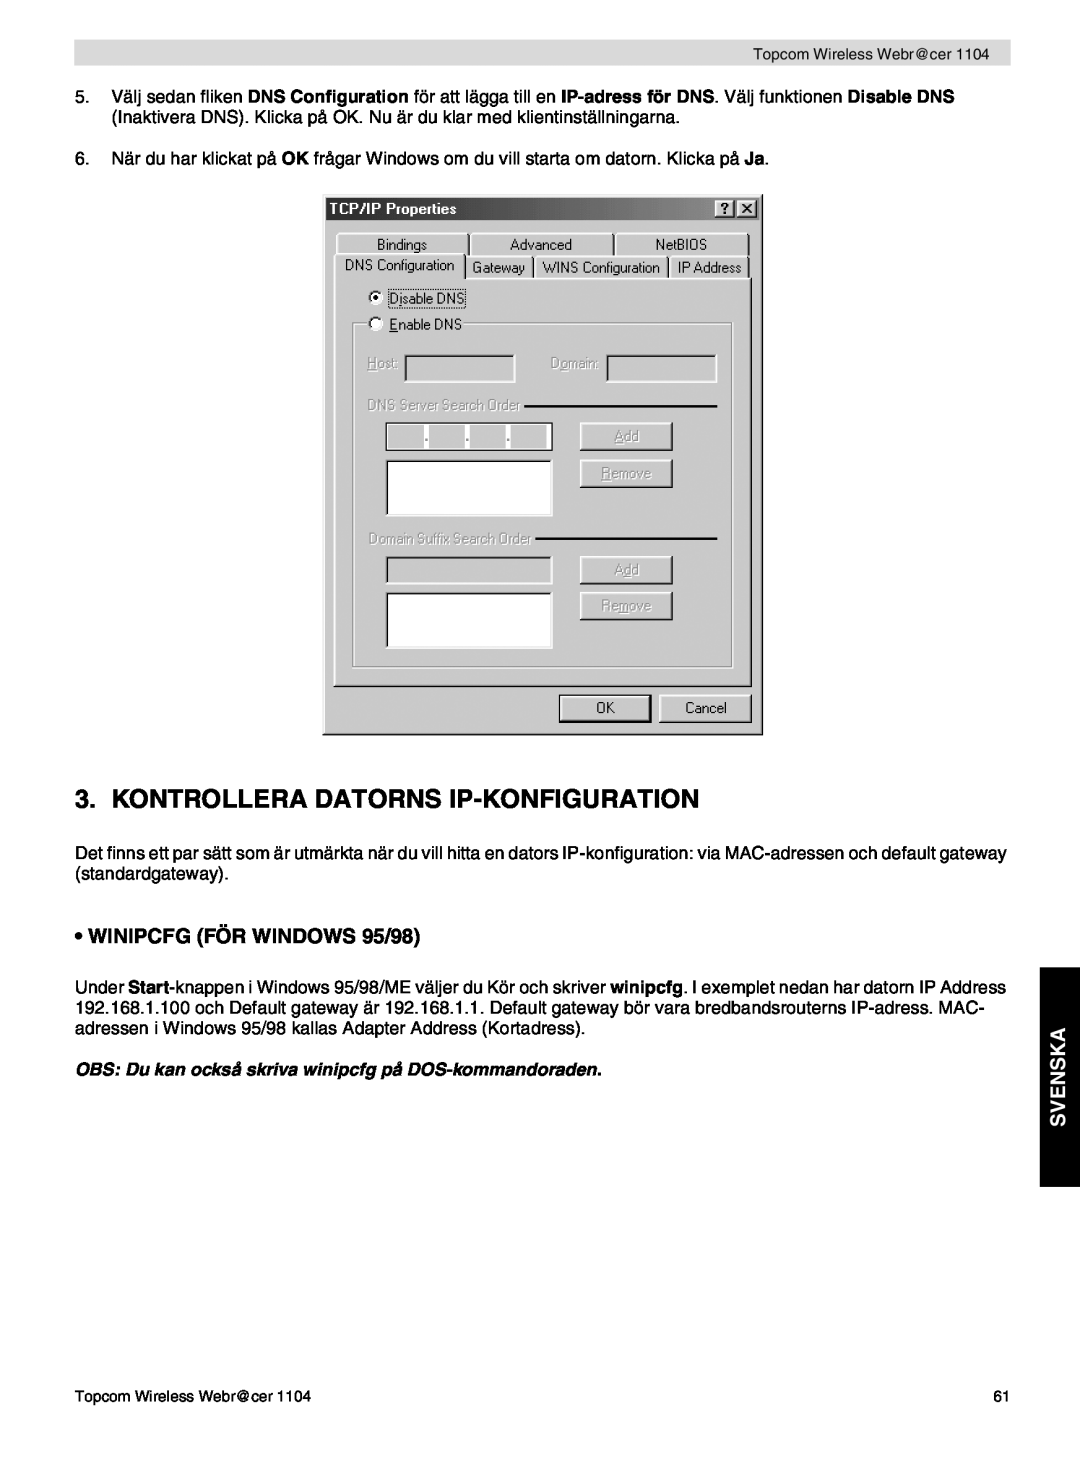 Topcom 1104 manual do utilizador Kontrollera Datorns Ip-Konfiguration, WINIPCFG FÖR WINDOWS 95/98, Svenska 